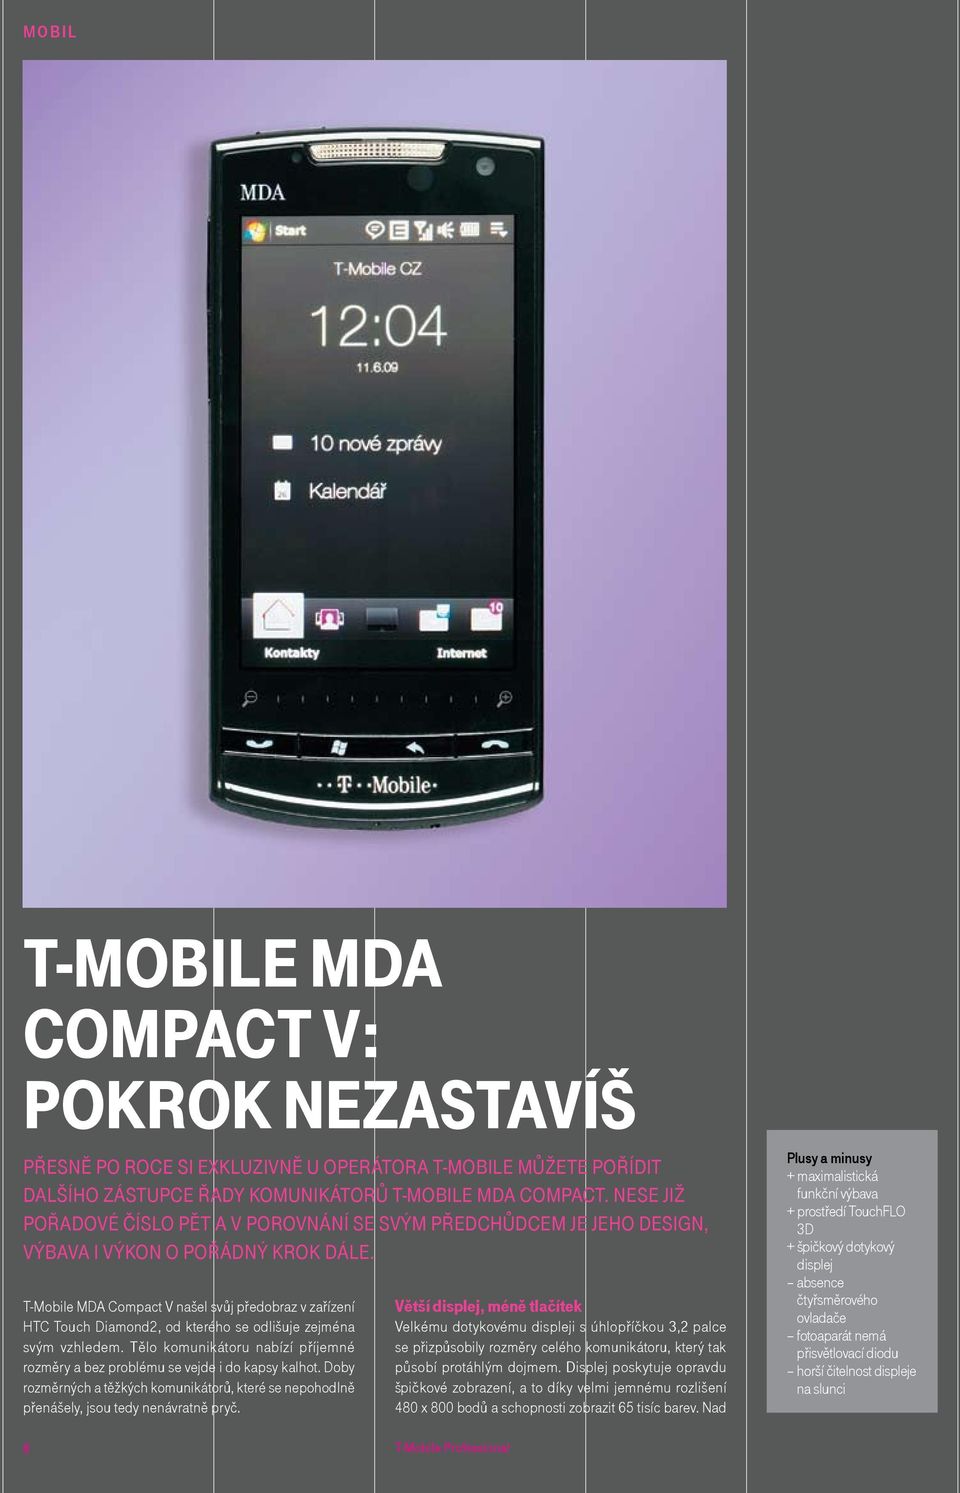 T-Mobile MDA Compact V našel svůj předobraz v zařízení HTC Touch Diamond2, od kterého se odlišuje zejména svým vzhledem.